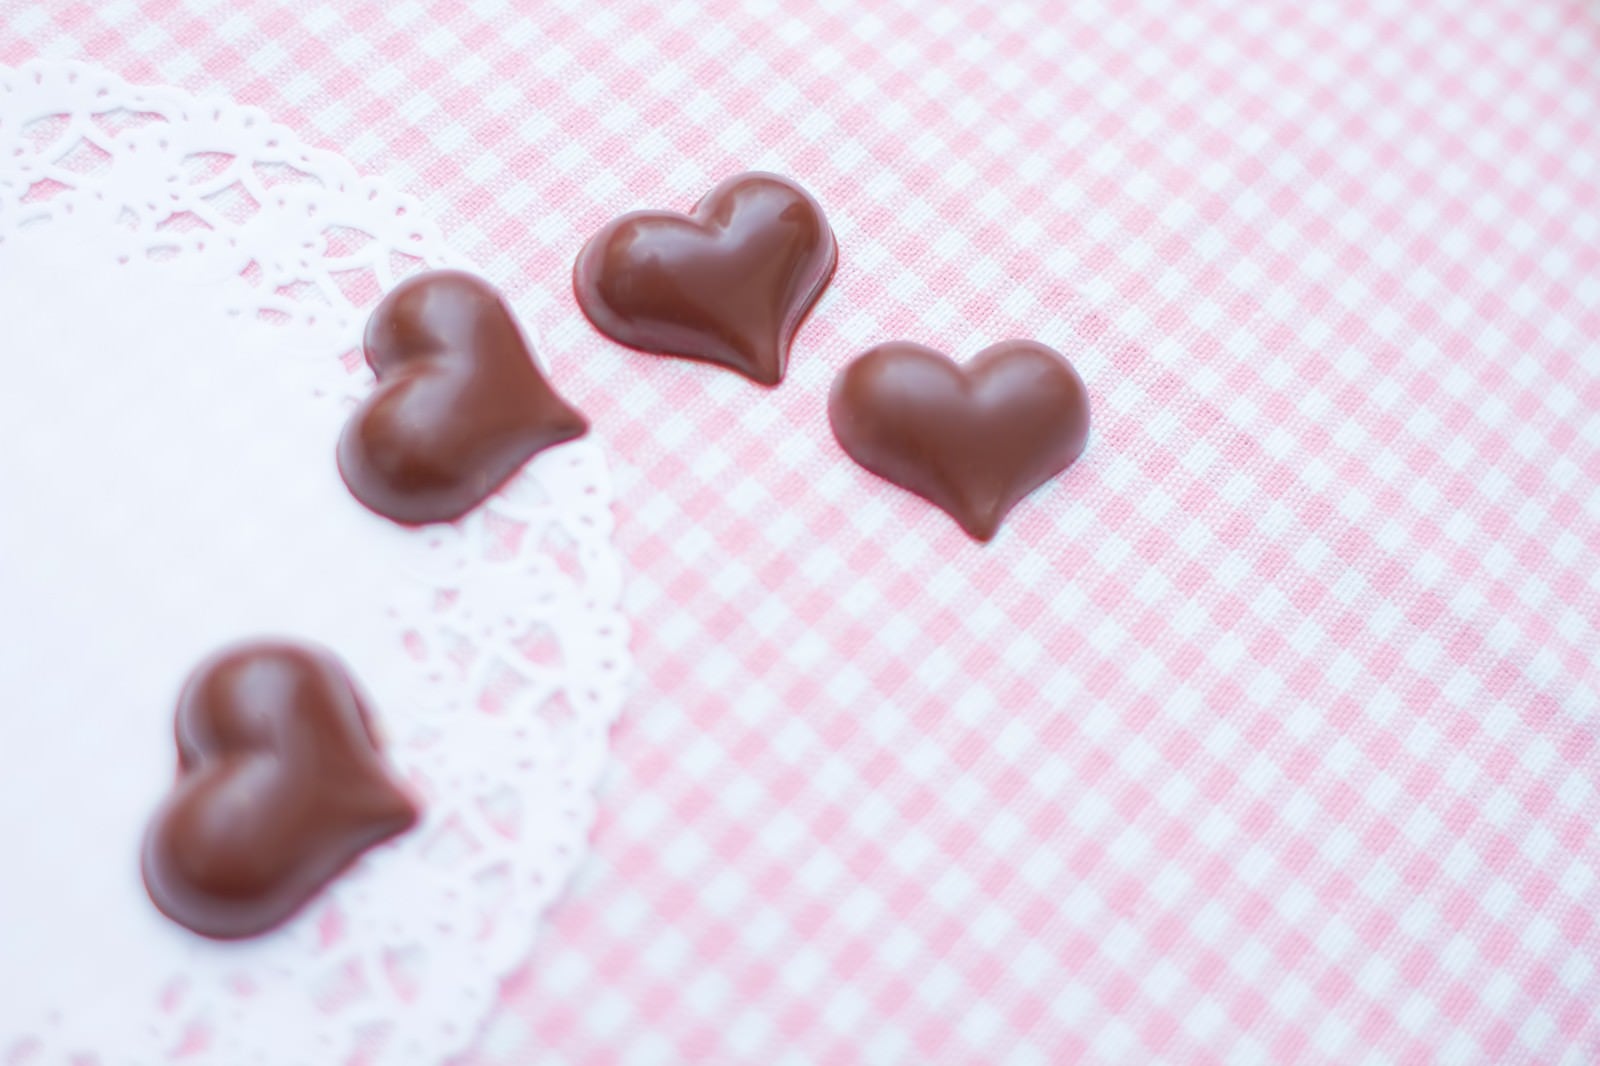 「ハート型のチョコレート」の写真